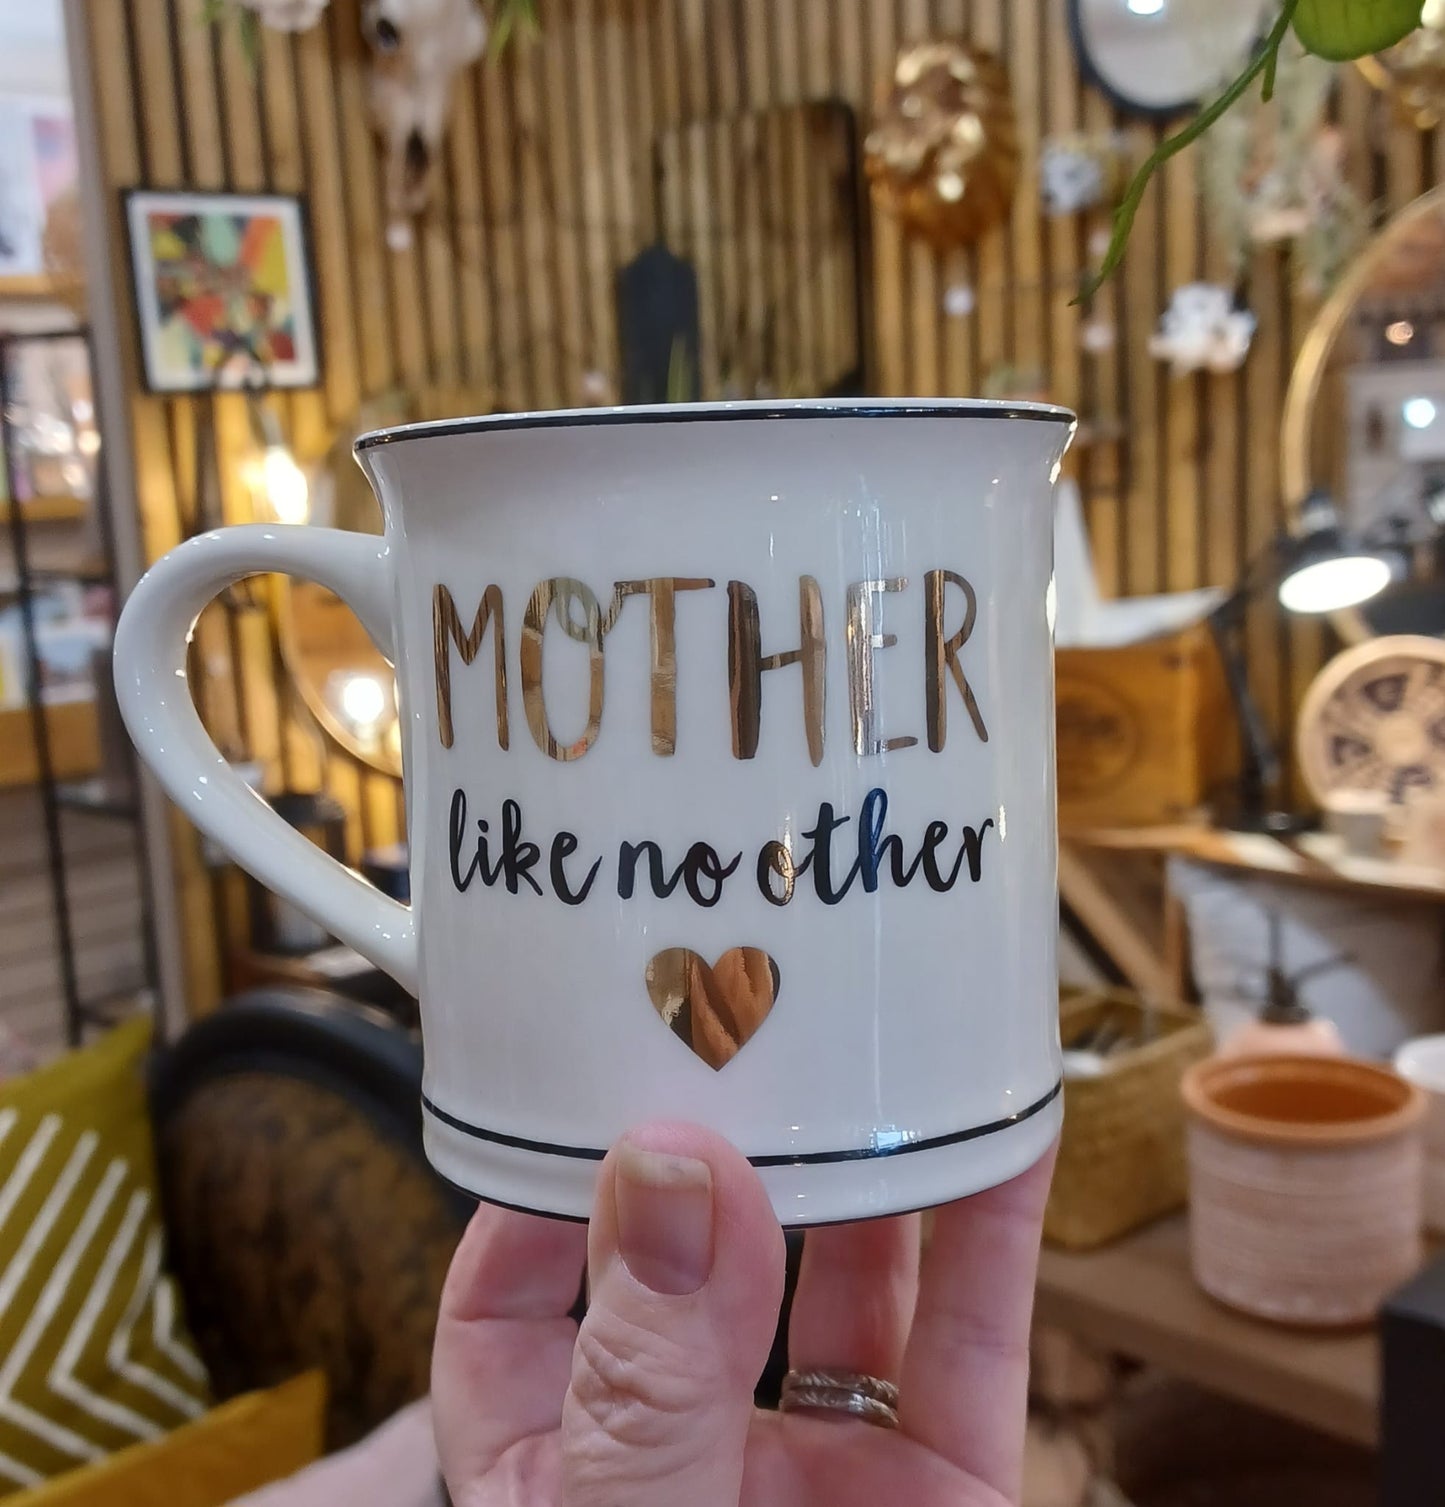 Mother Like No Other Mug